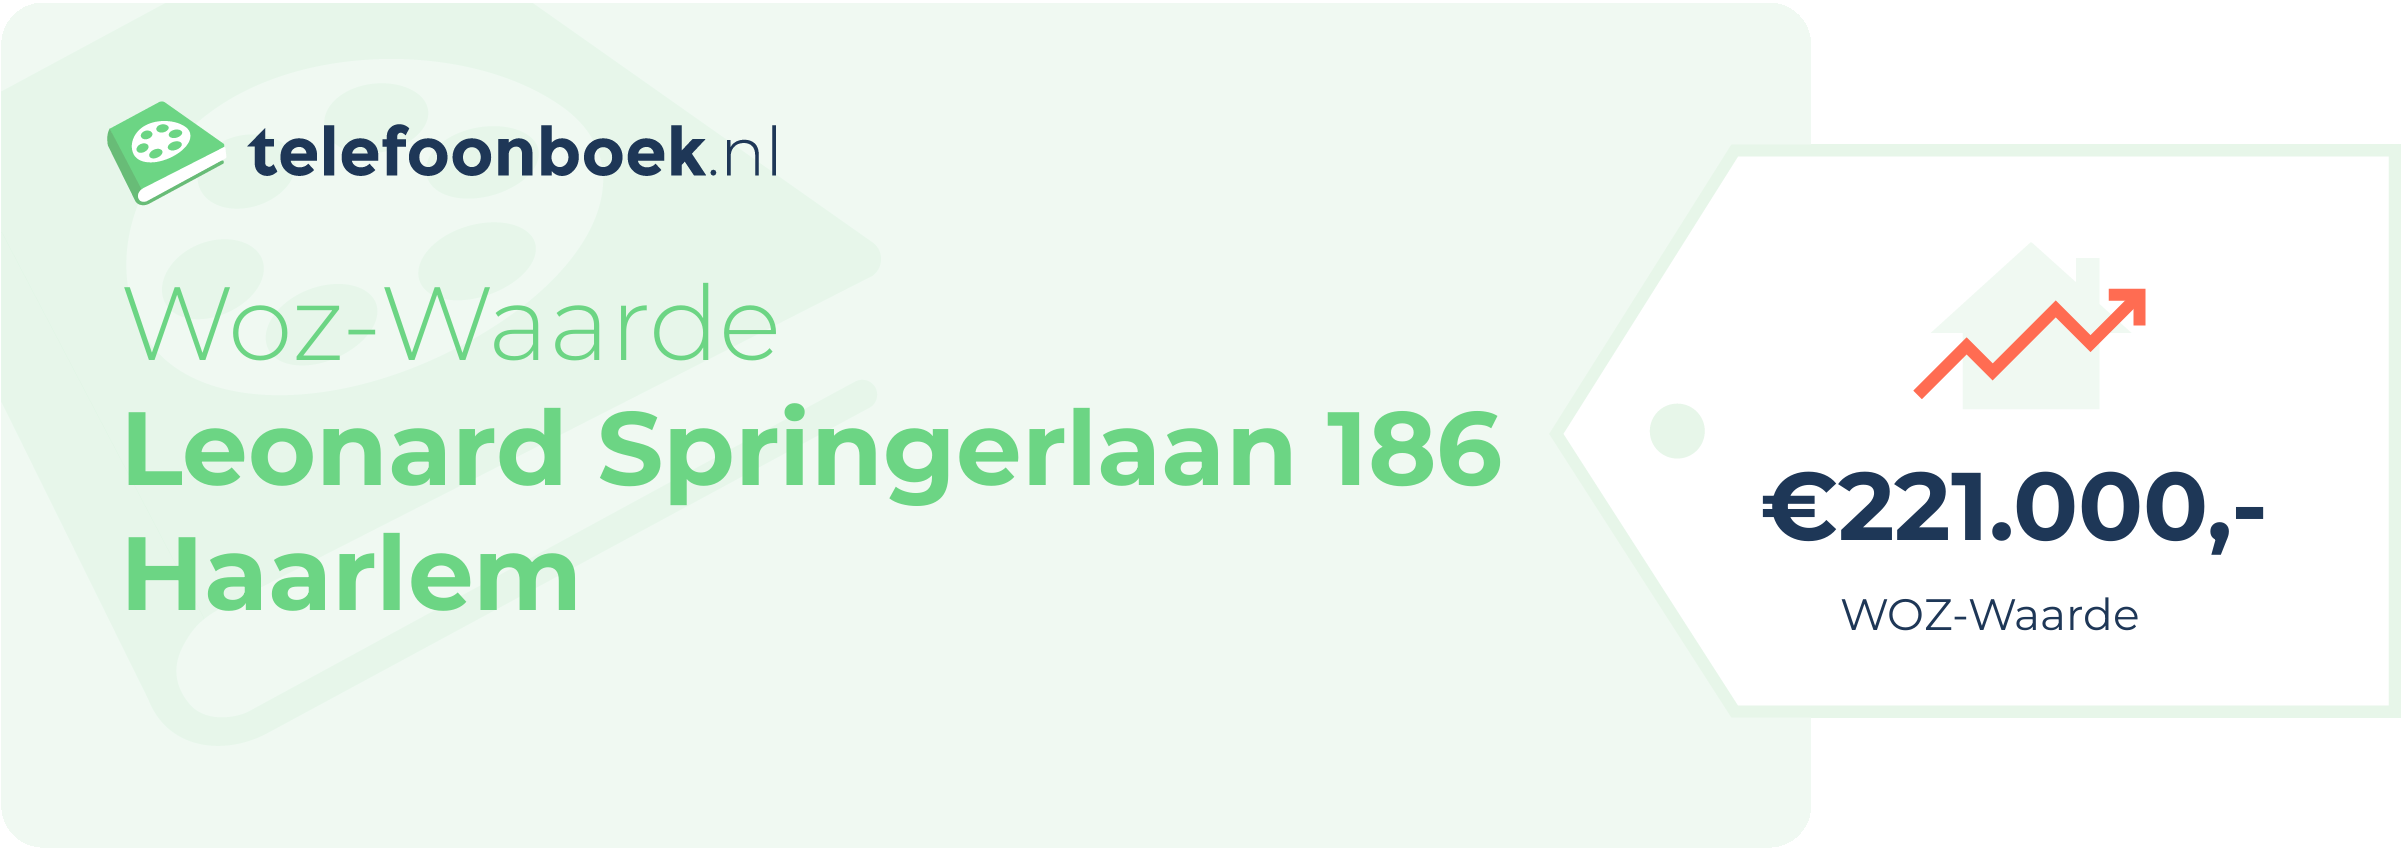 WOZ-waarde Leonard Springerlaan 186 Haarlem